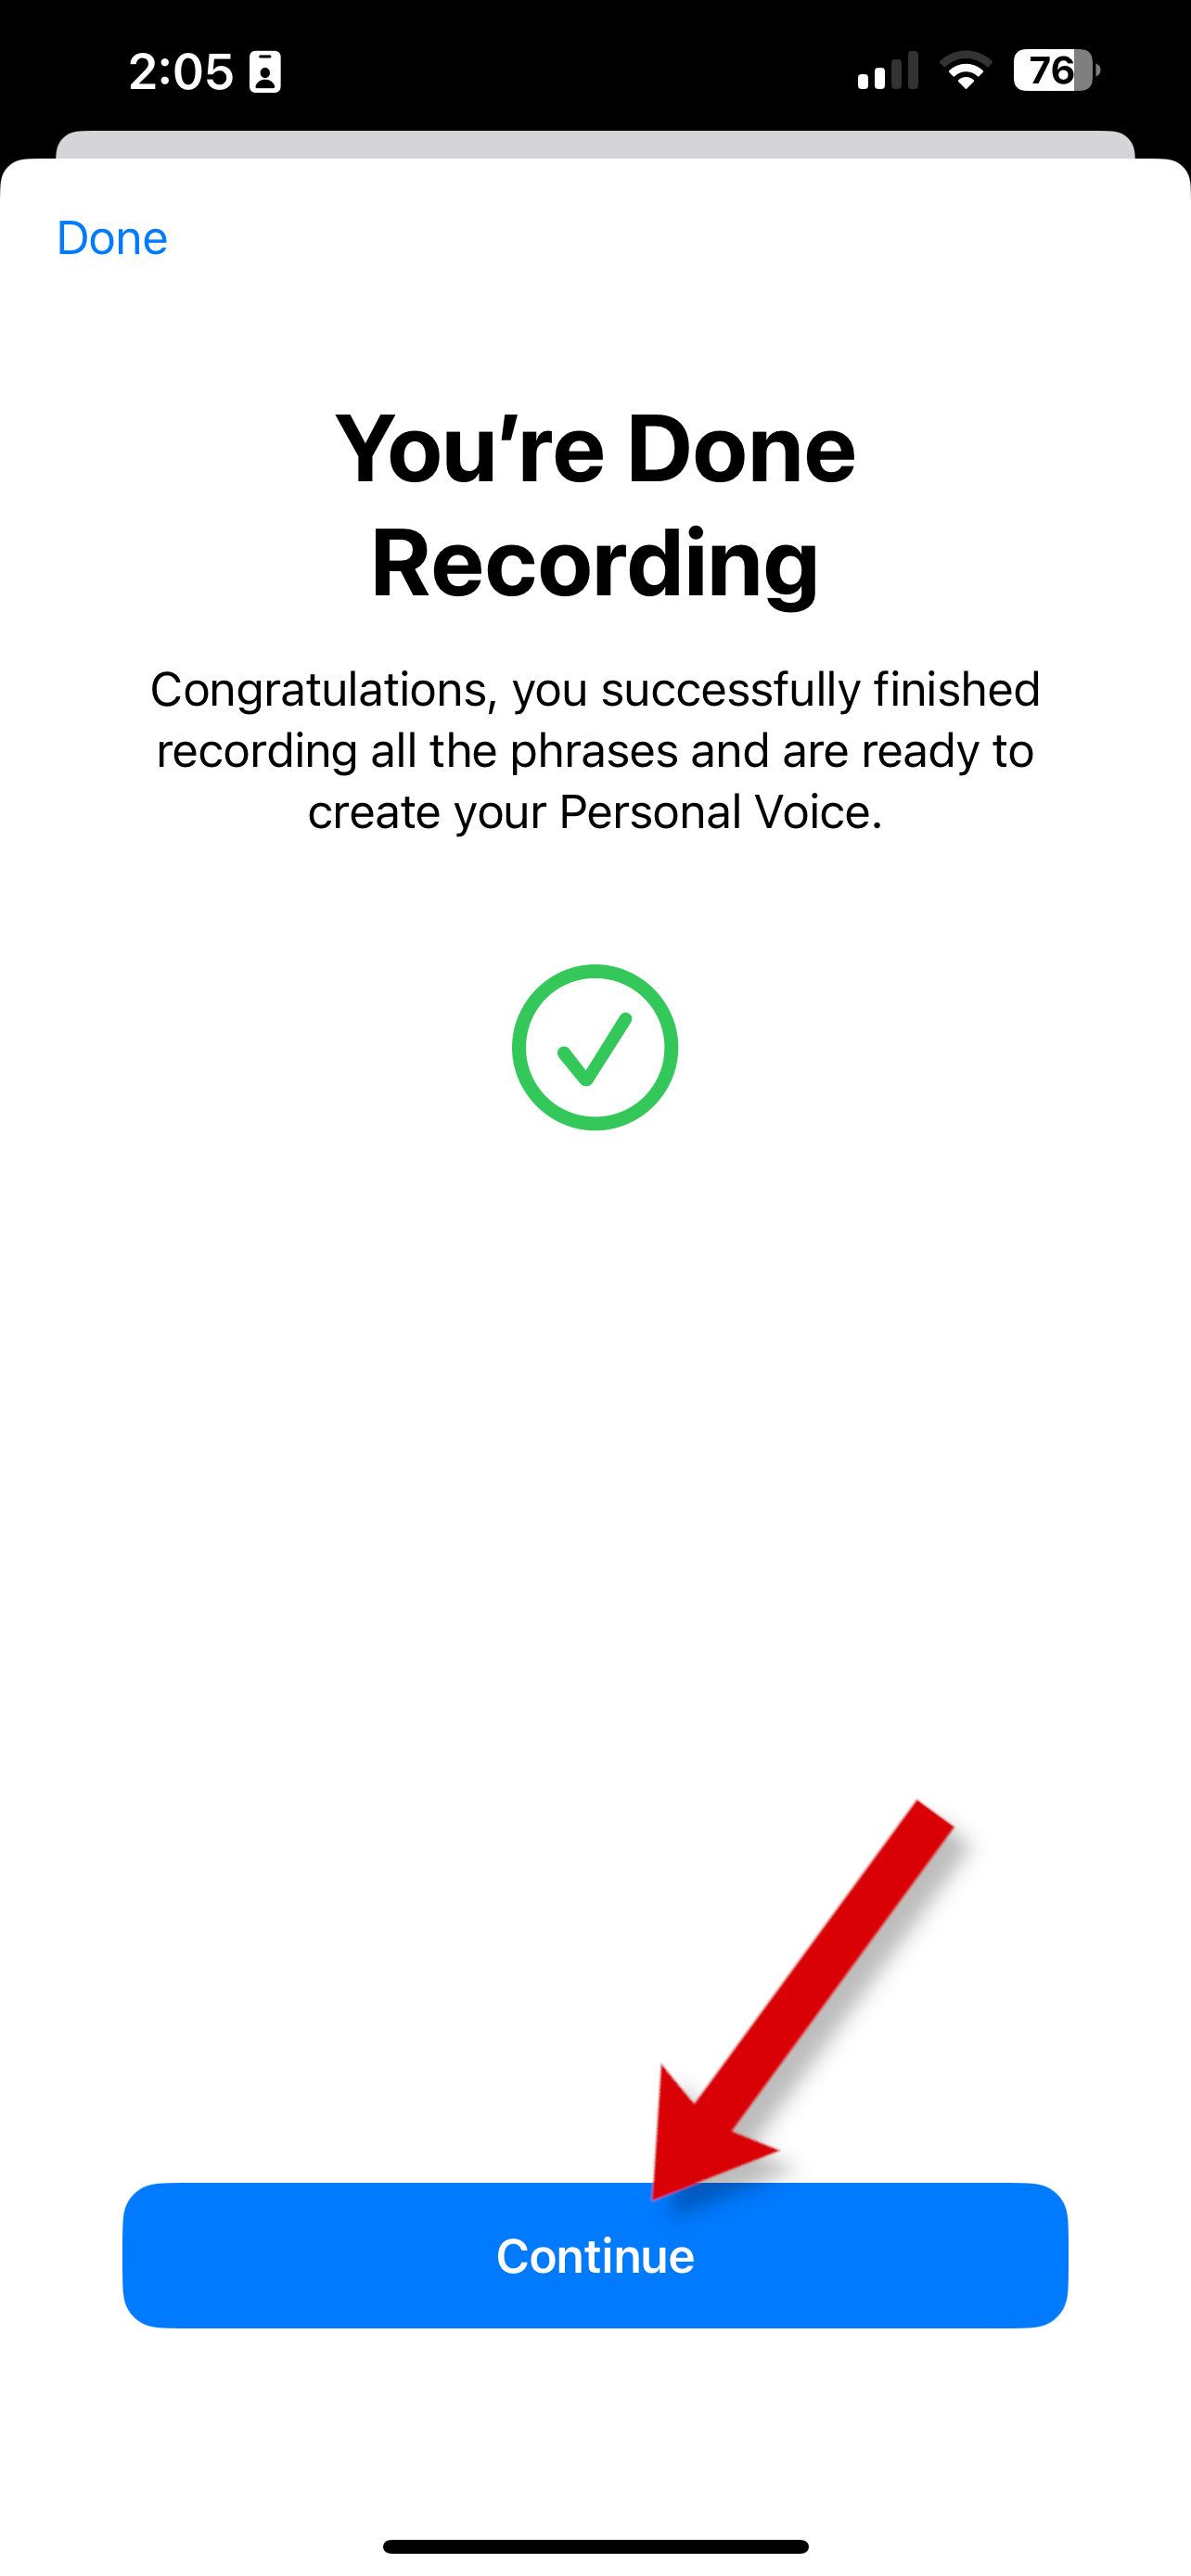 Uma captura de tela mostrando a conclusão da gravação do Personal Voice